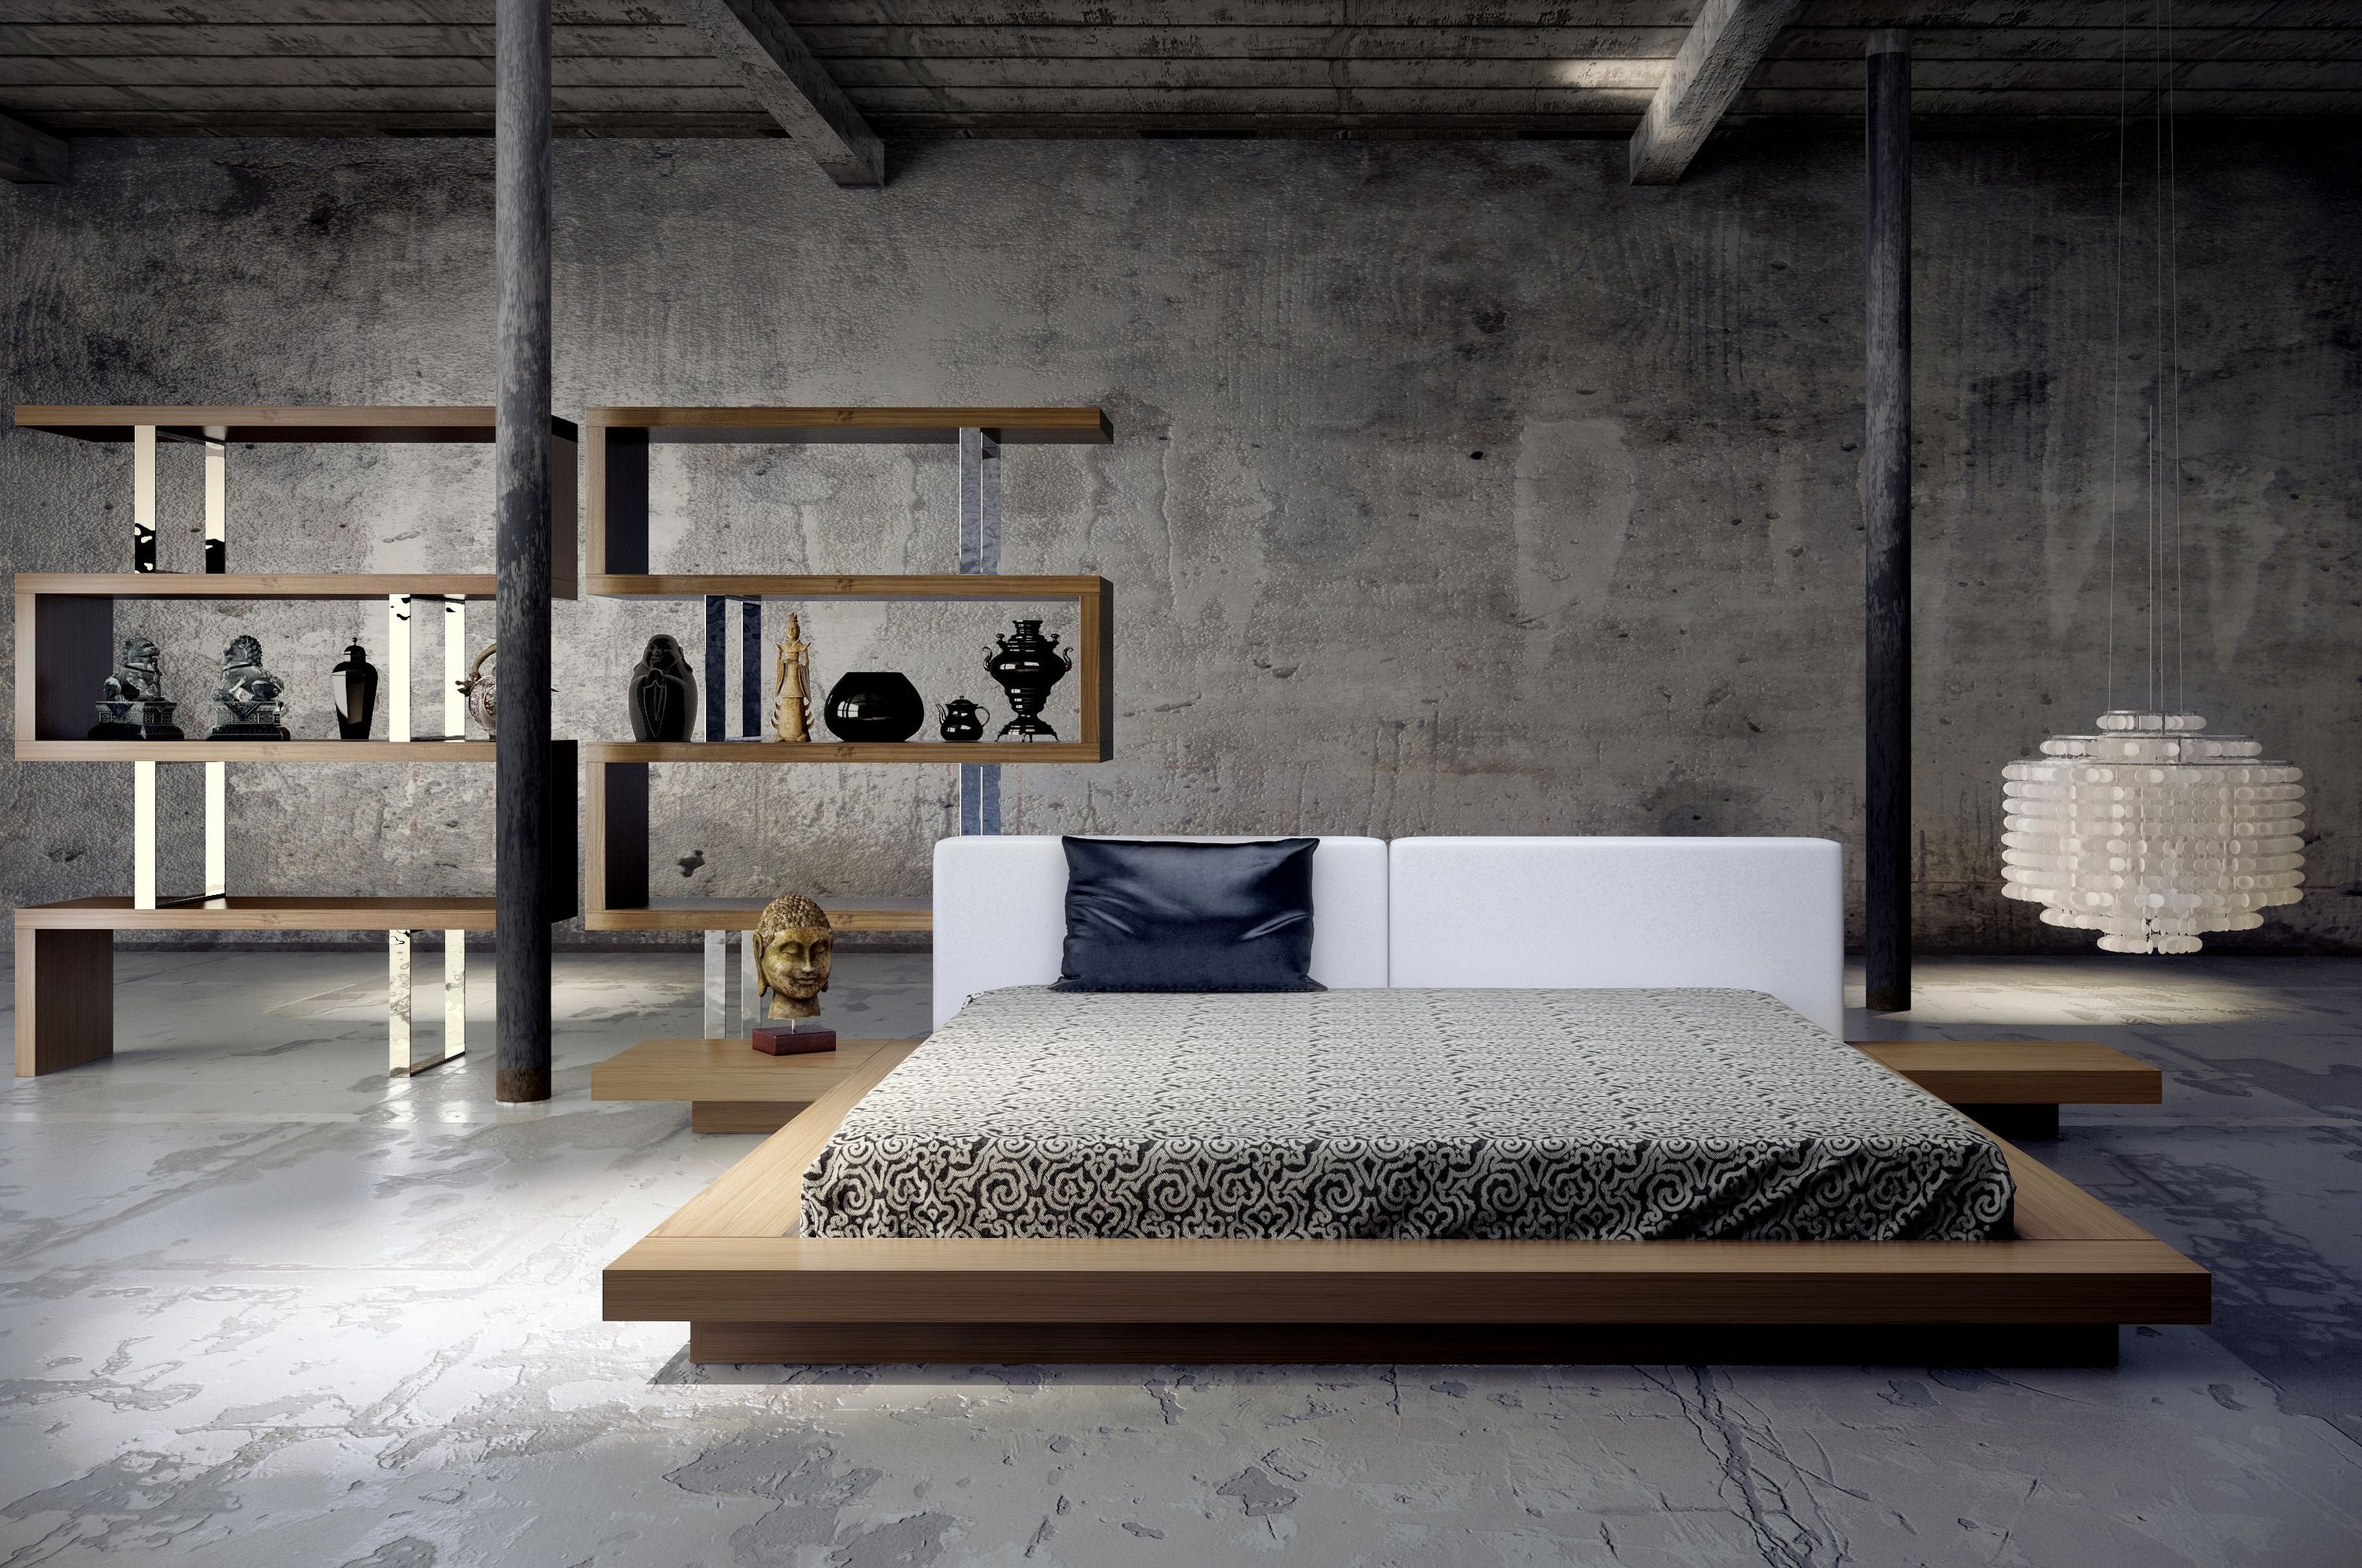 Купить бетонную стену. Кровать лофт бедрум. Кровать лофт индустриал. Кровать в стиле лофт Индастриал из металла. Кровать в стиле лофт из металла индустриал.